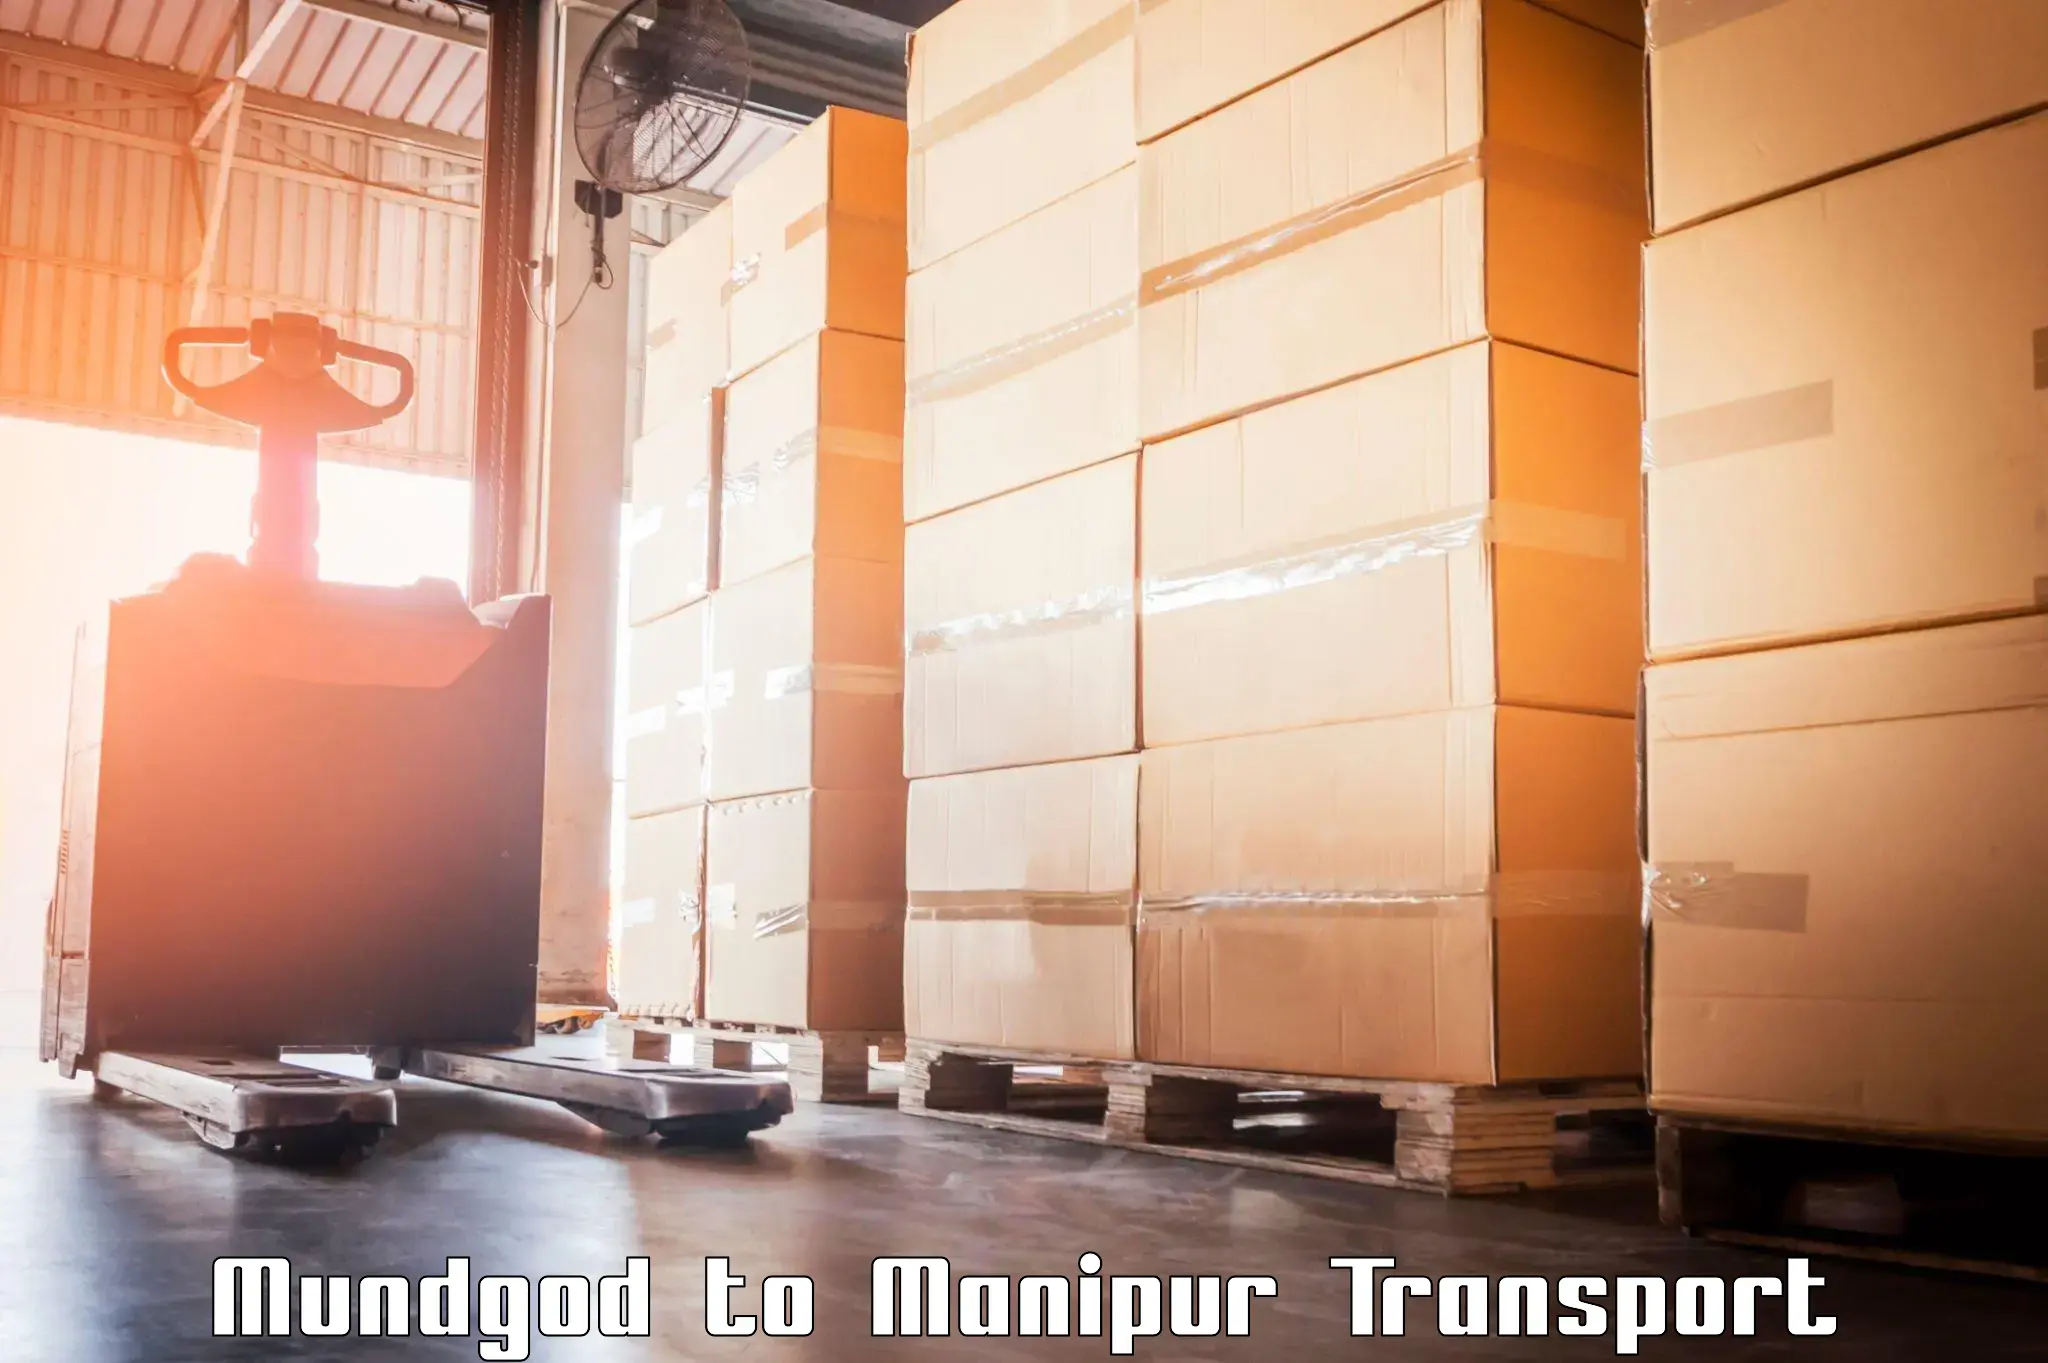 Transport shared services Mundgod to Chandel